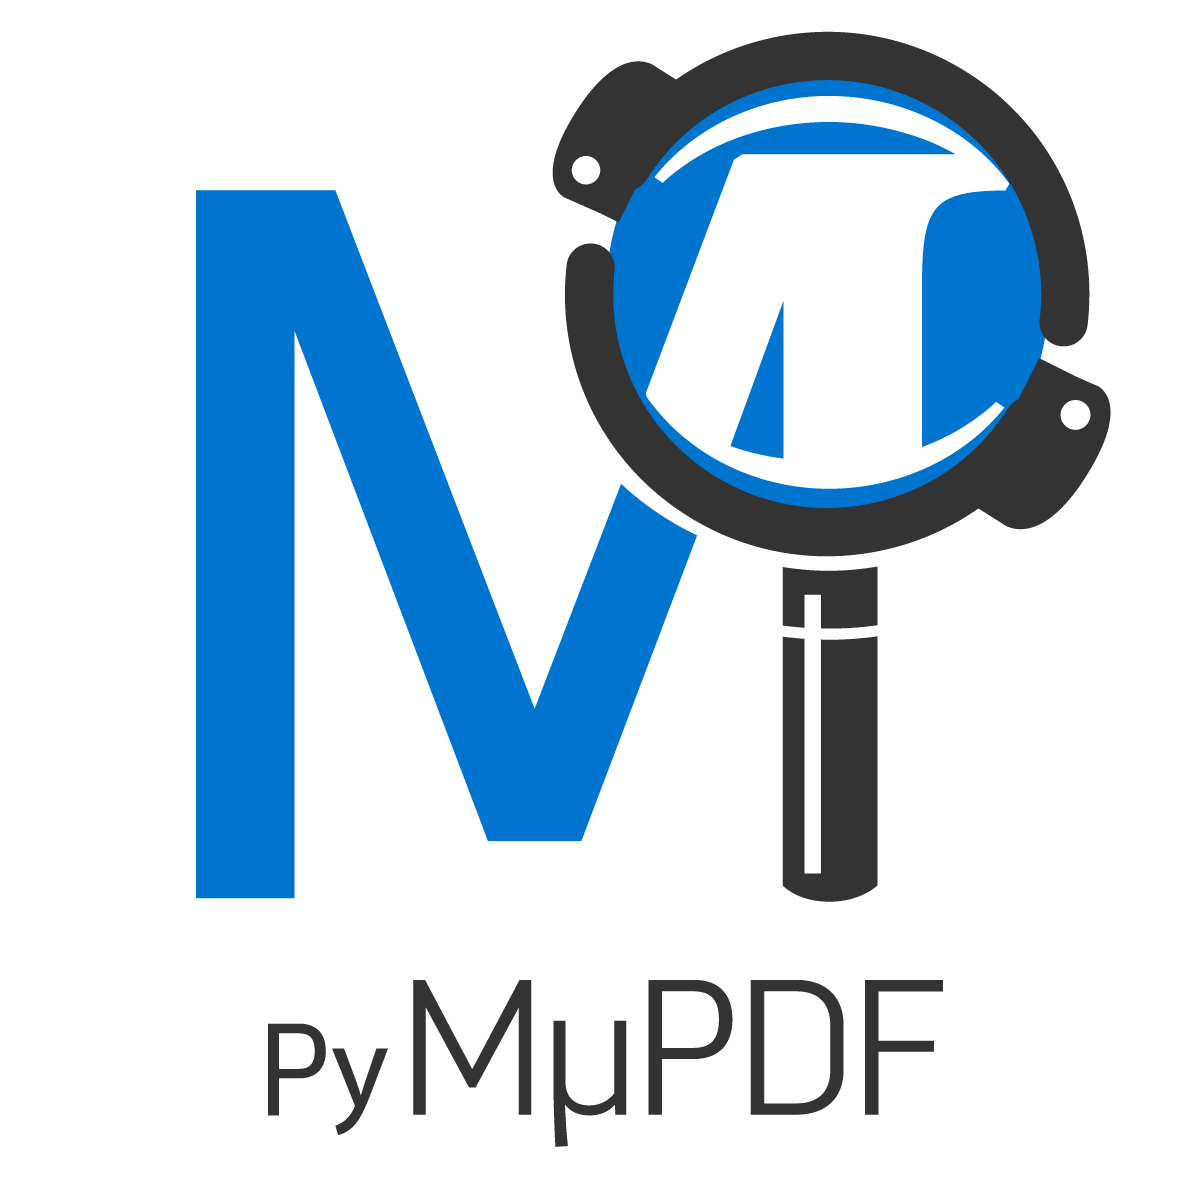 _images/pymupdf-logo.png